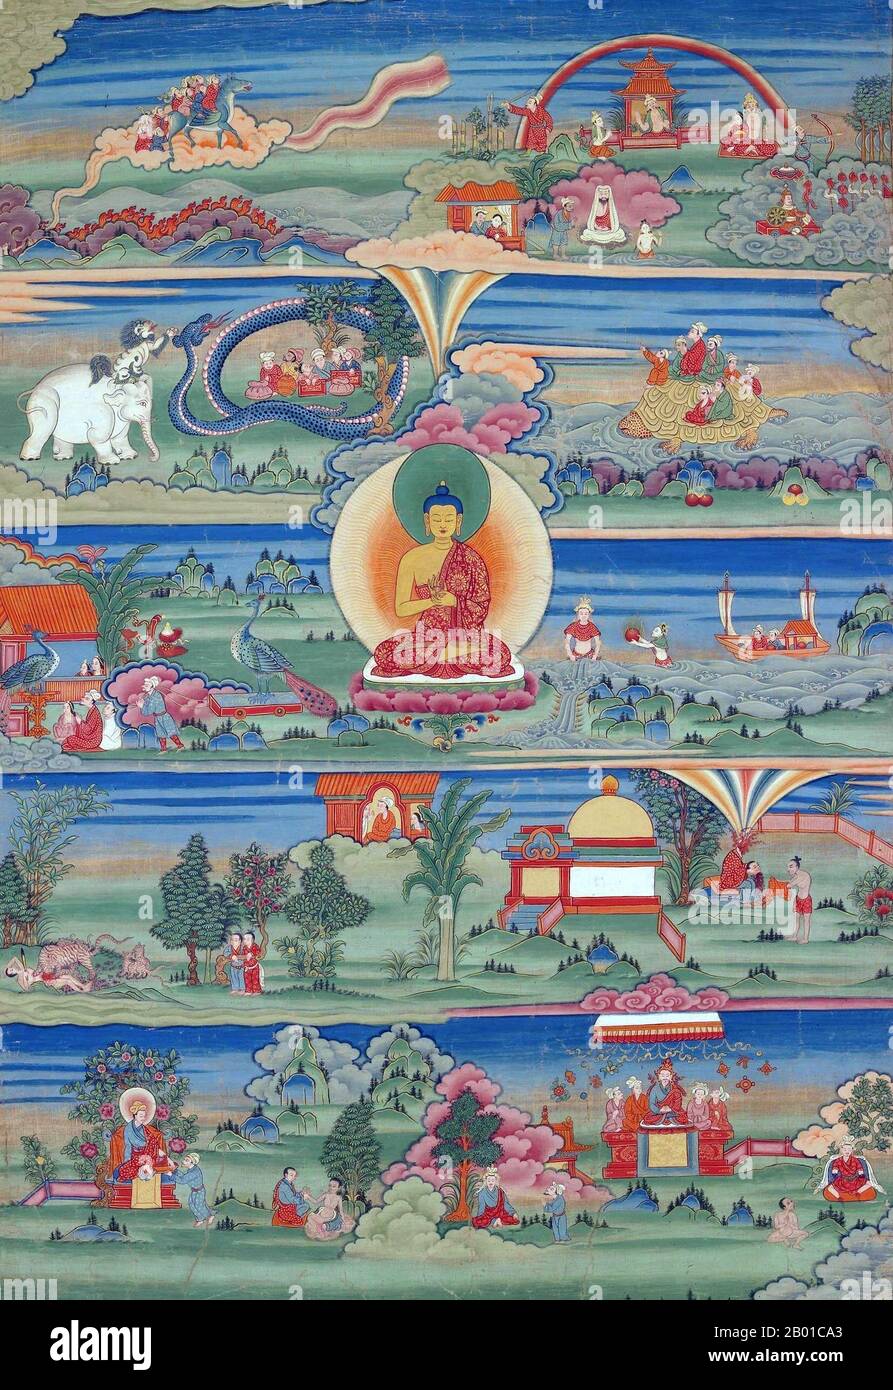 Bhutan: Un thangka di Jataka che racconta i cicli di nascita del Buddha, Phajoding Gompa, Thimphu, 18th-19th ° secolo. Gli Jatakas ('Storia della nascita') sono un grande corpo di letteratura indiana che descrive le precedenti nascite del Buddha di Gautama sia in forma umana che animale. Alcune di queste storie sono considerate grandi opere letterarie di per sé, e si basano sull'idea che il Buddha stava per ricordare le sue vite passate e utilizzare questi ricordi per raccontare una storia morale e illustrare i suoi insegnamenti. Foto Stock